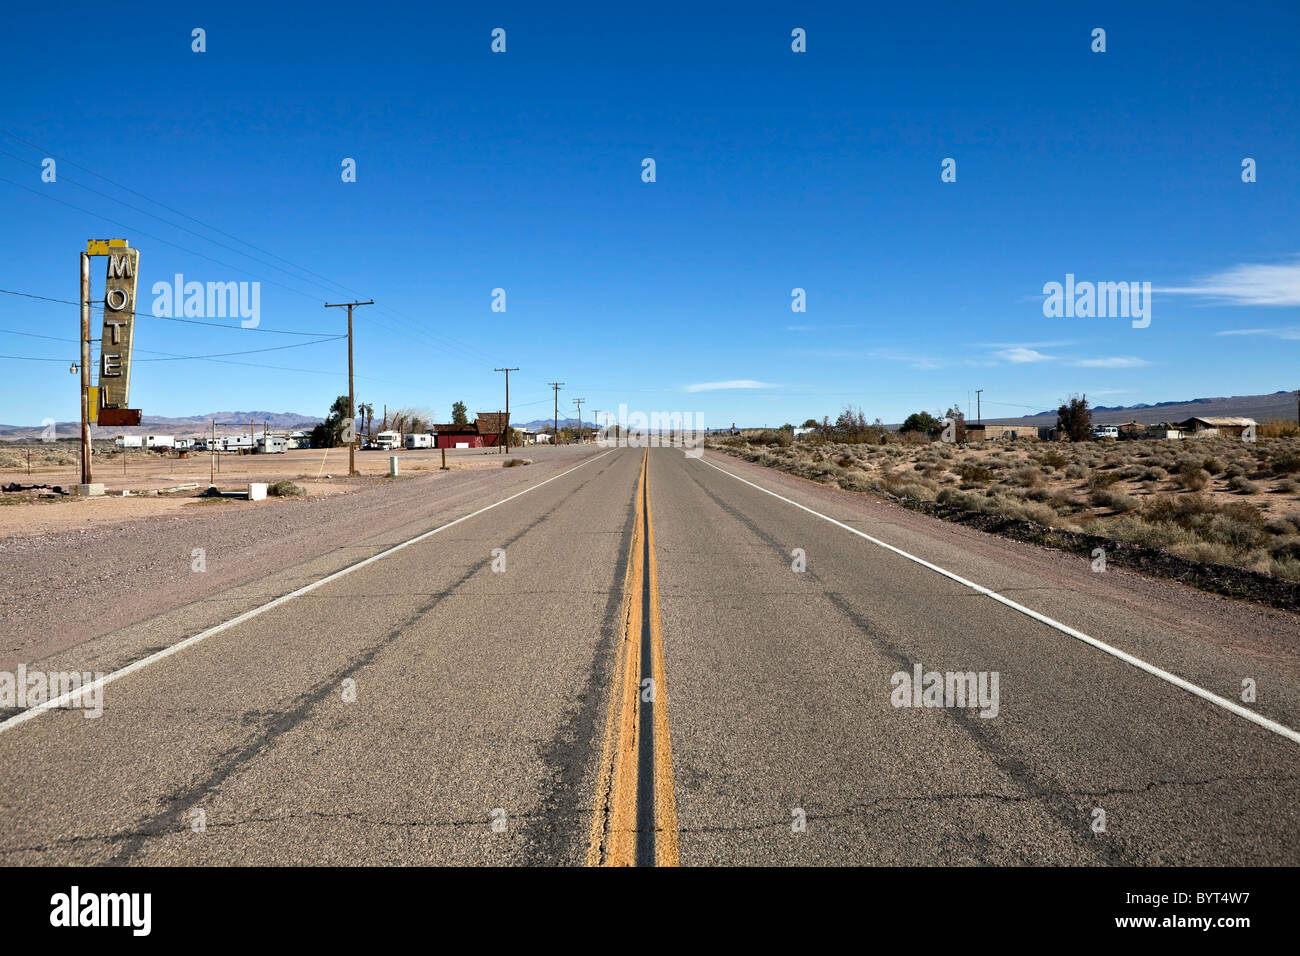 La partie décomposée de l'historique Route 66 au milieu de l'immense désert de Mojave en Californie. Banque D'Images